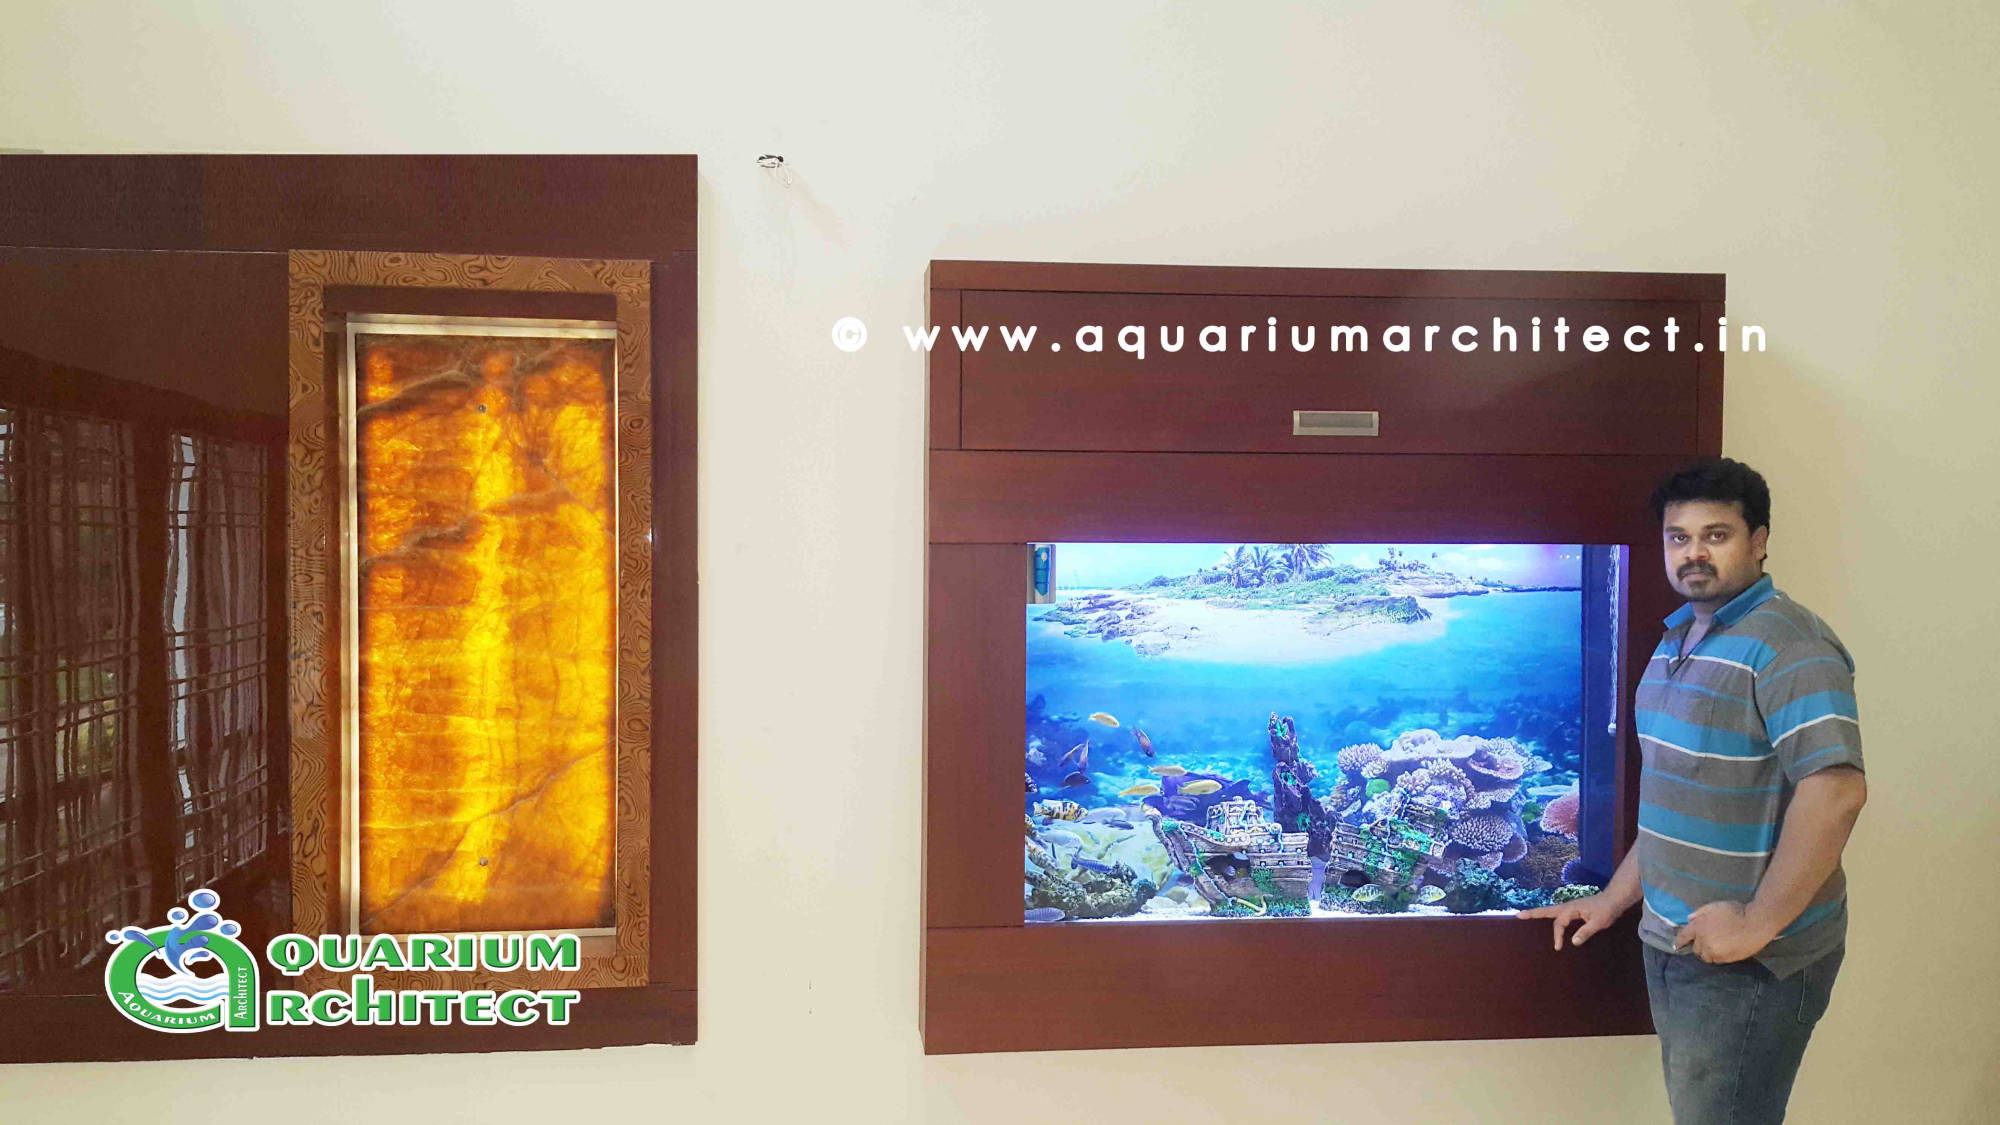 Customised Aquarium in Chennai | Aquarium Chennai | Aquarium architect | aquariumchennai.com